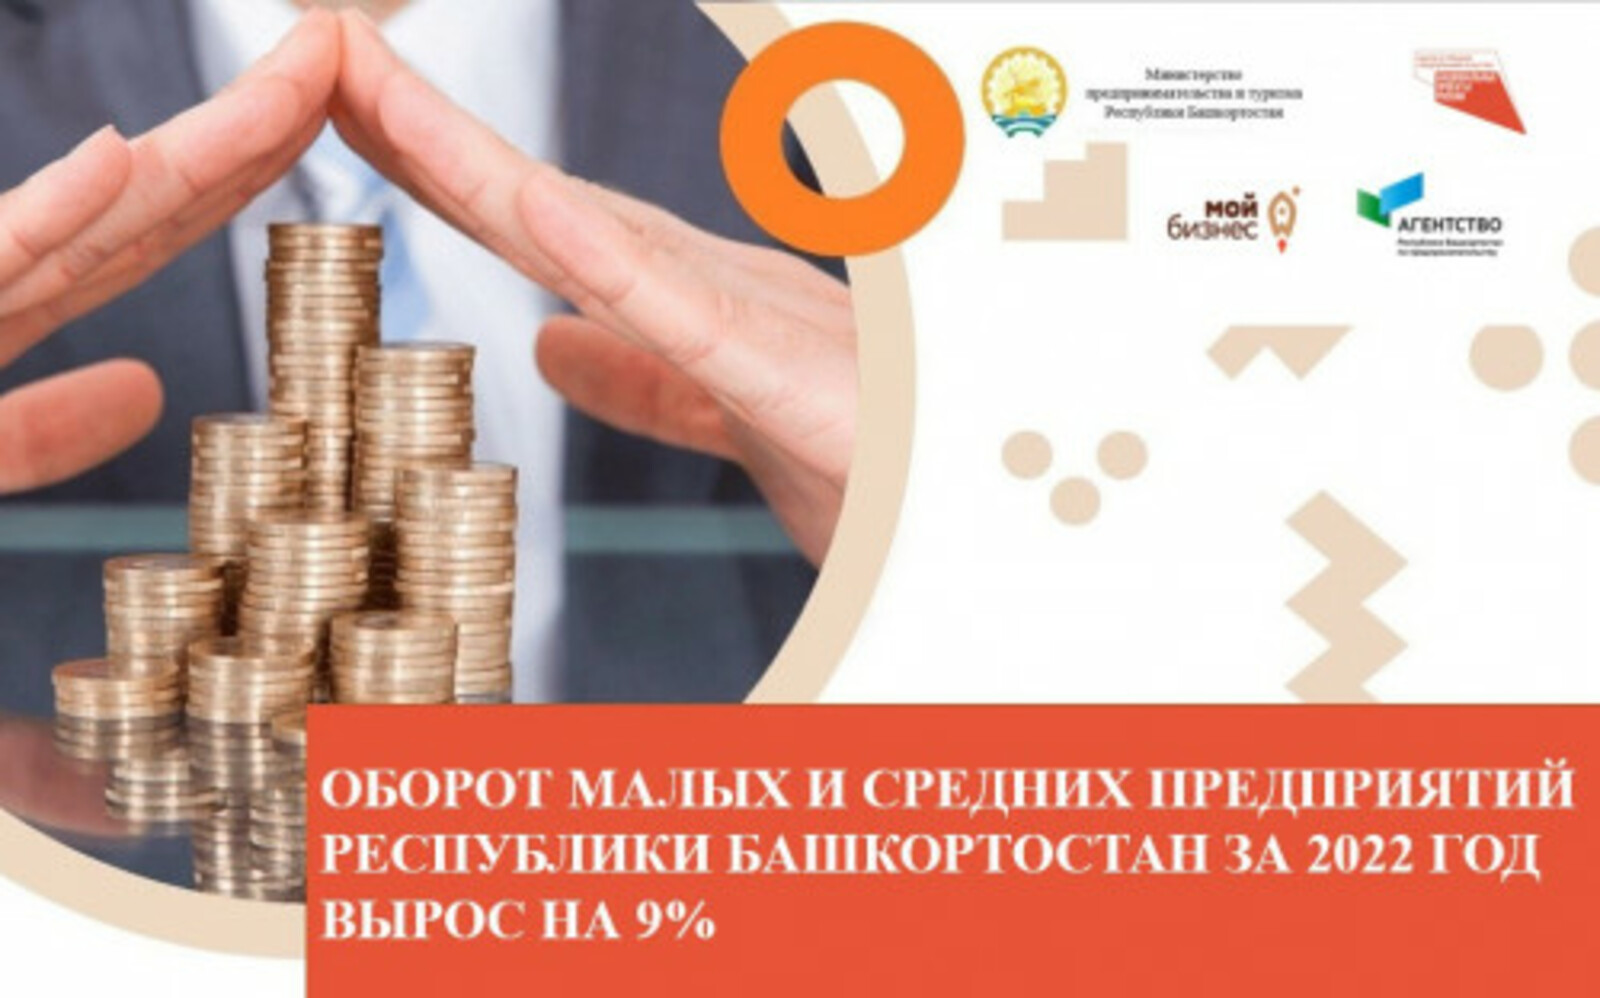 Оборот малых и средних предприятий Республики Башкортостан за 2022 год вырос на 9%